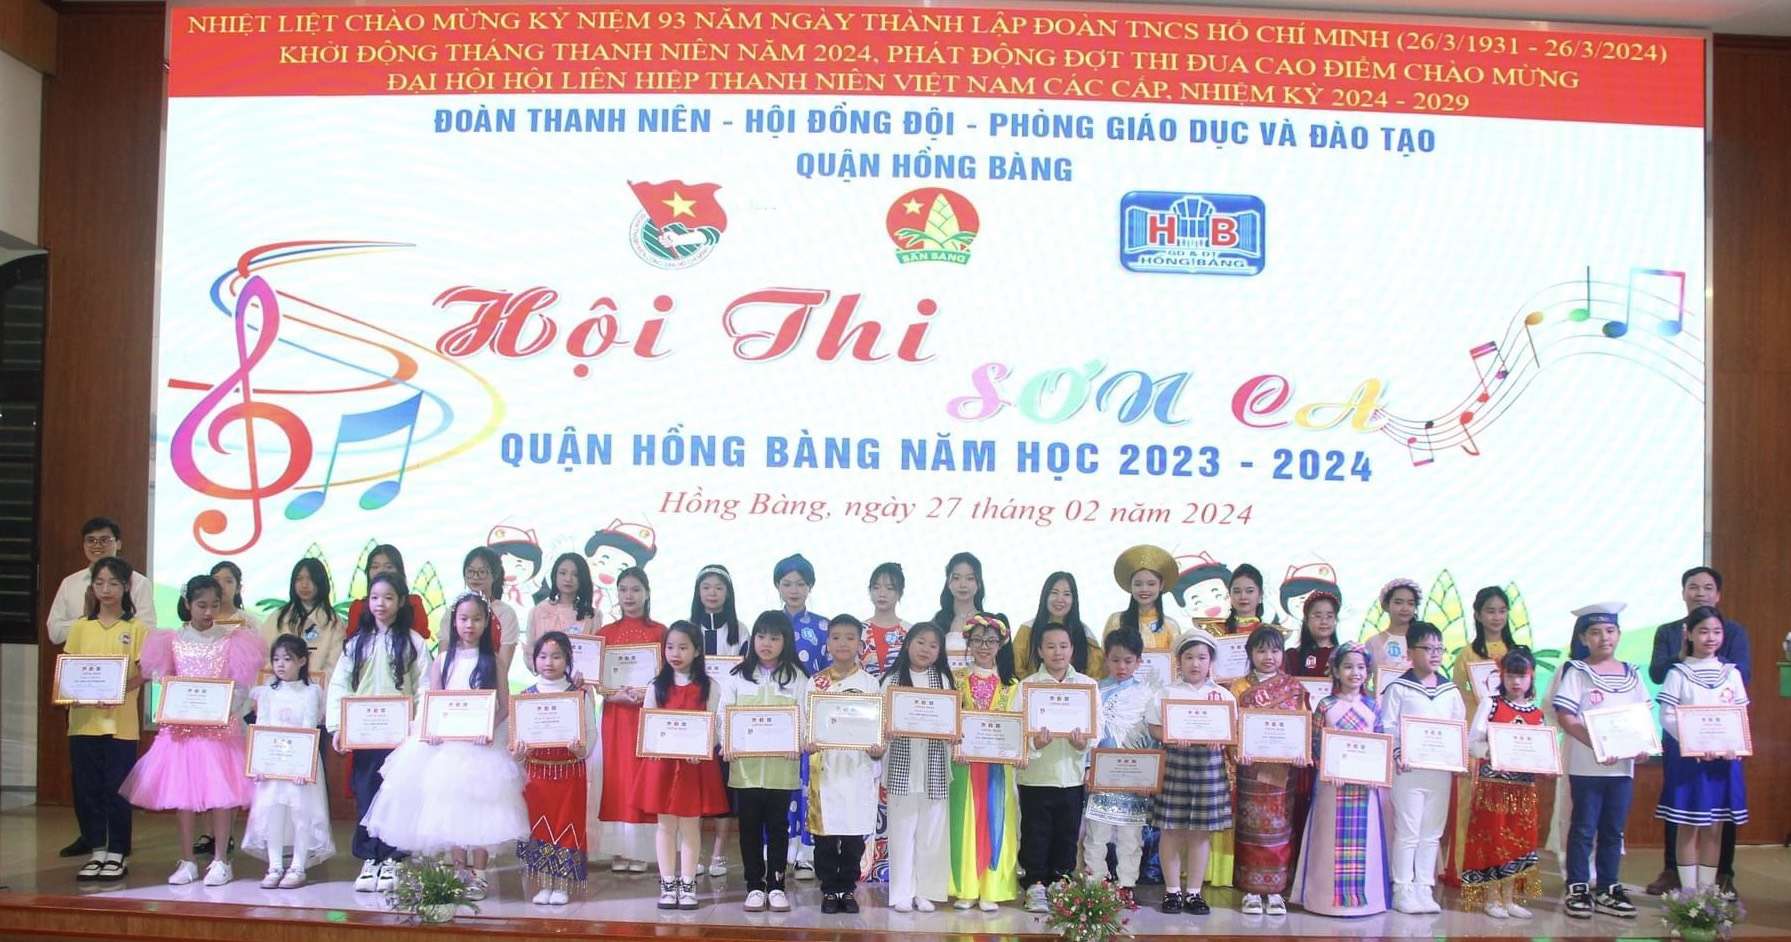 Hội thi Sơn ca quận Hồng Bàng  năm học 2023 - 2024